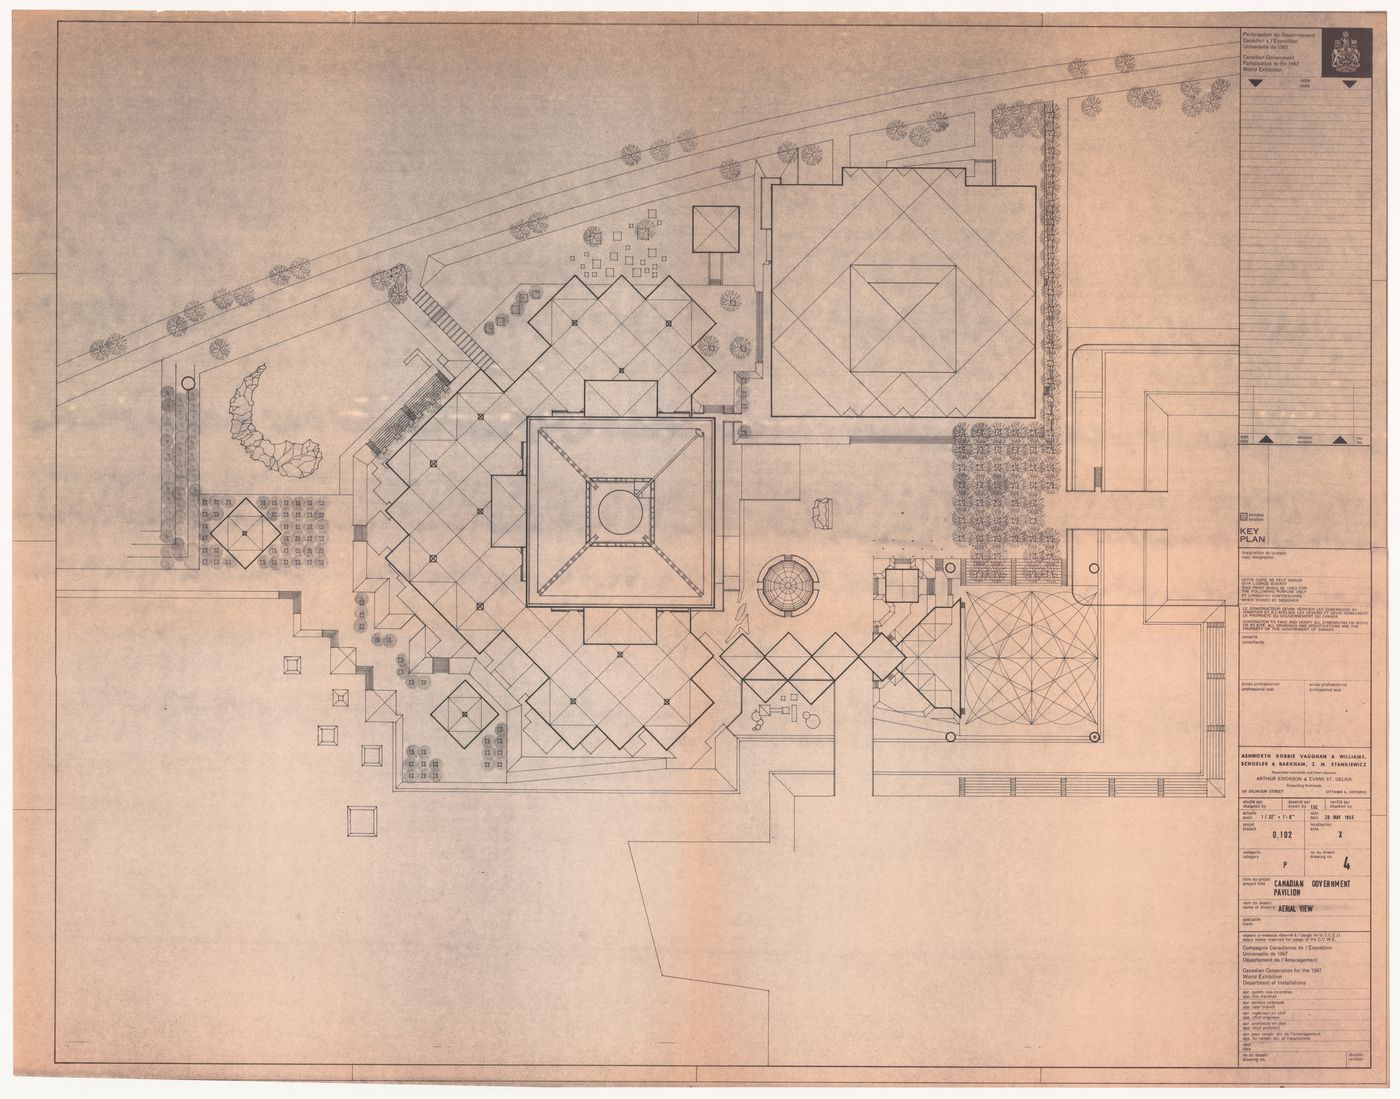 Site plan for Canadian Federal Pavilion, Expo '67, Montréal, Québec